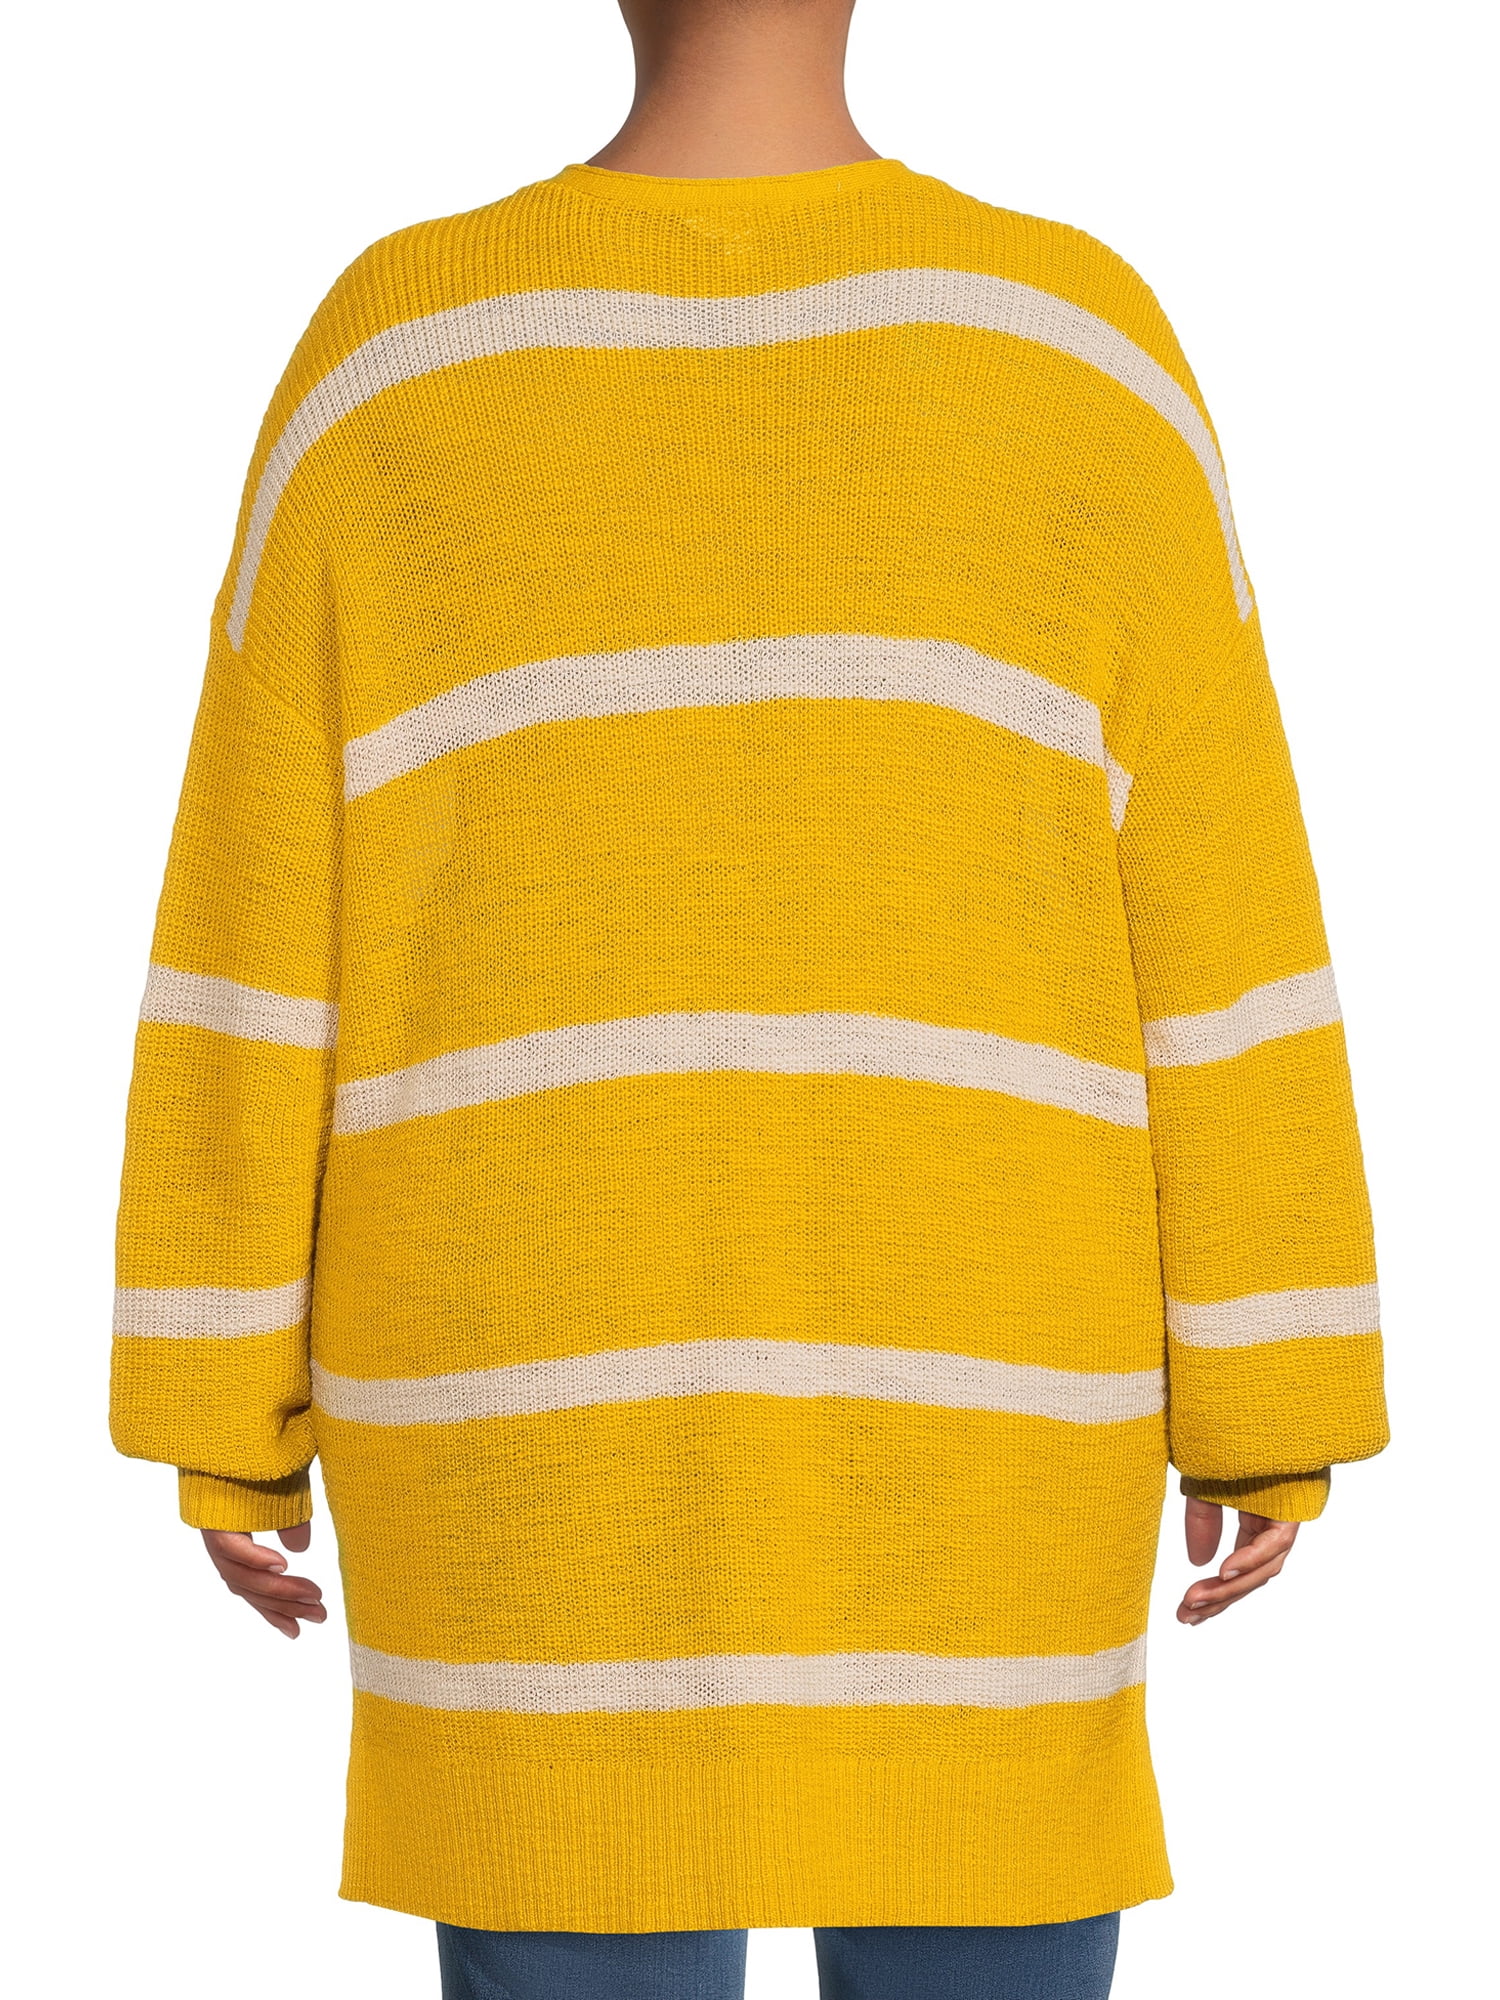 Terra & Sky Women's Plus Size Stripe Henley Tunic Sweater, Lightweight 